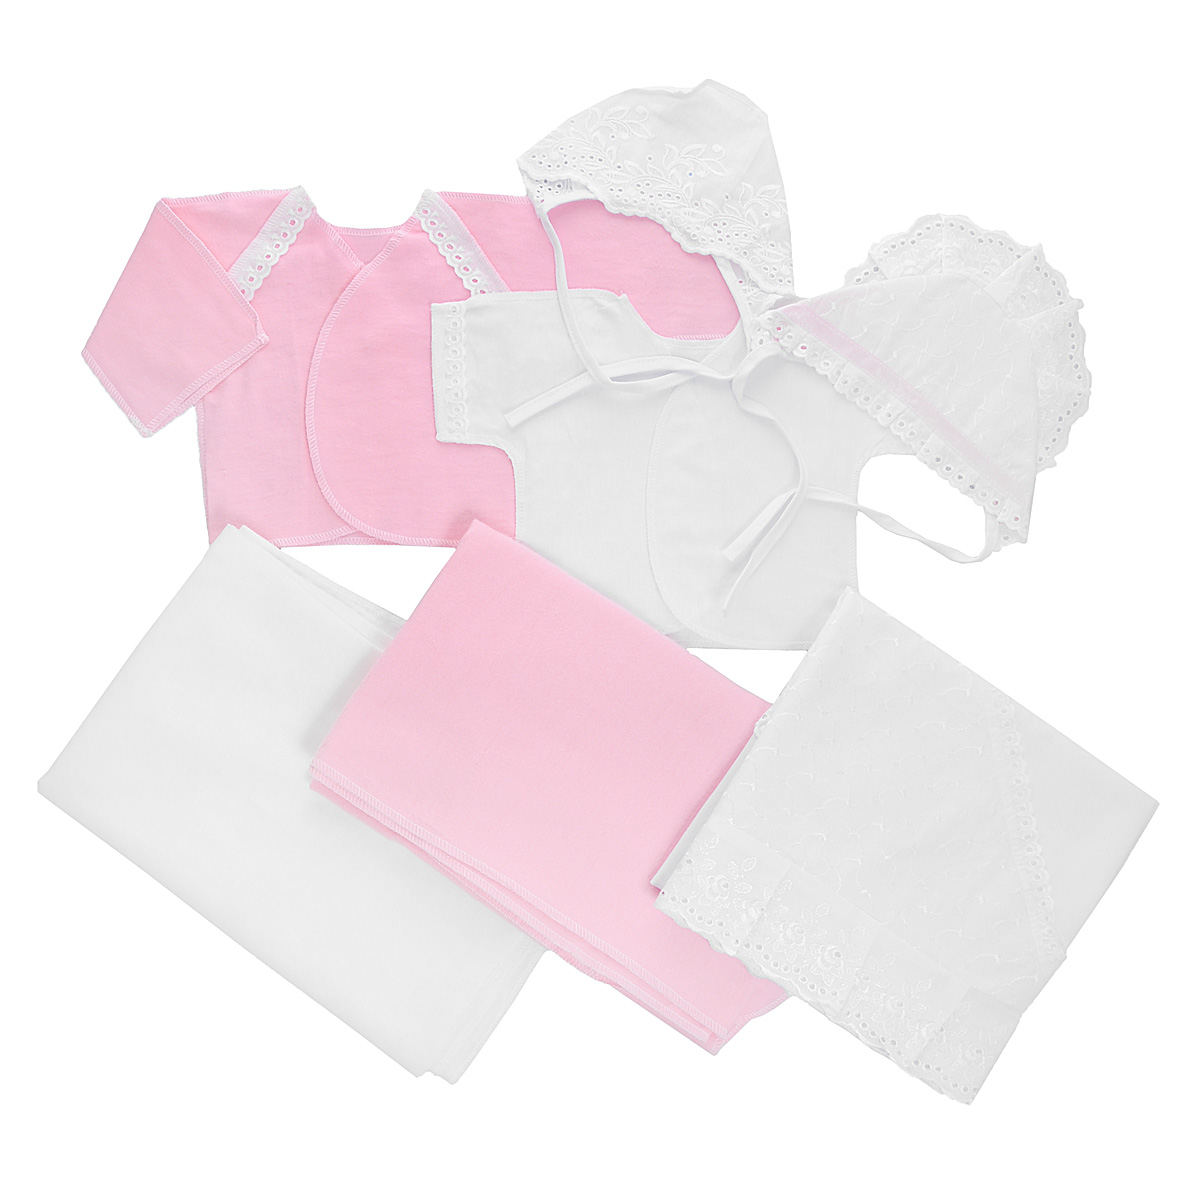 Комплект для новорожденного Трон-Плюс, 7 предметов, цвет: белый, розовый. 3403. Размер 50, 0-1 месяц